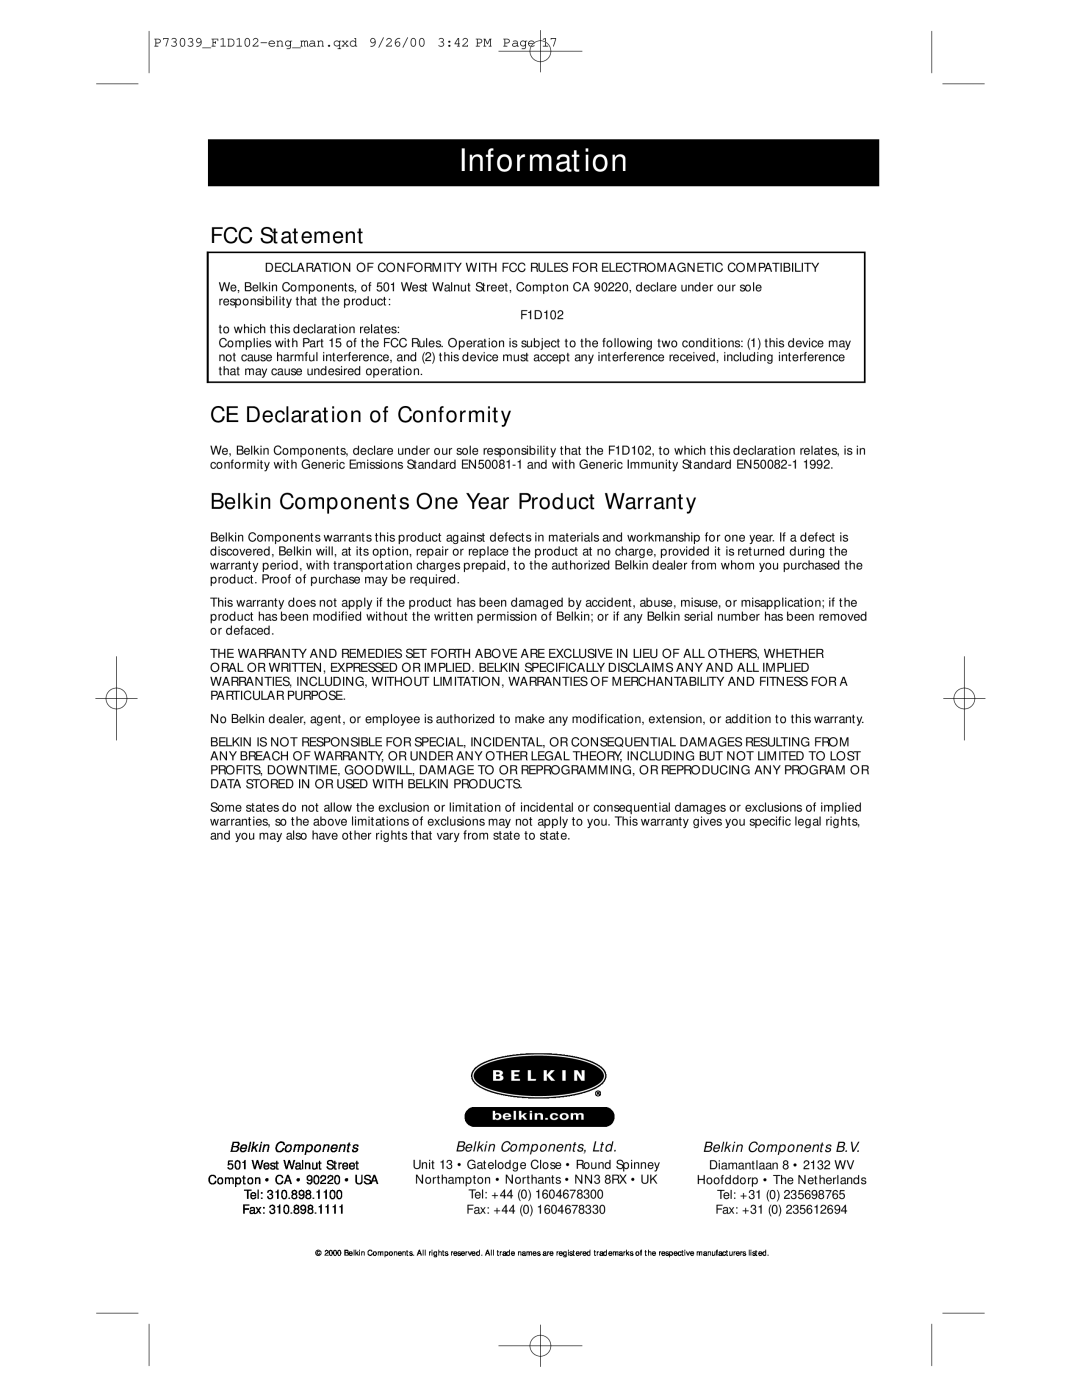 Belkin SE 2-Port Information, FCC Statement, CE Declaration of Conformity, Belkin Components One Year Product Warranty 